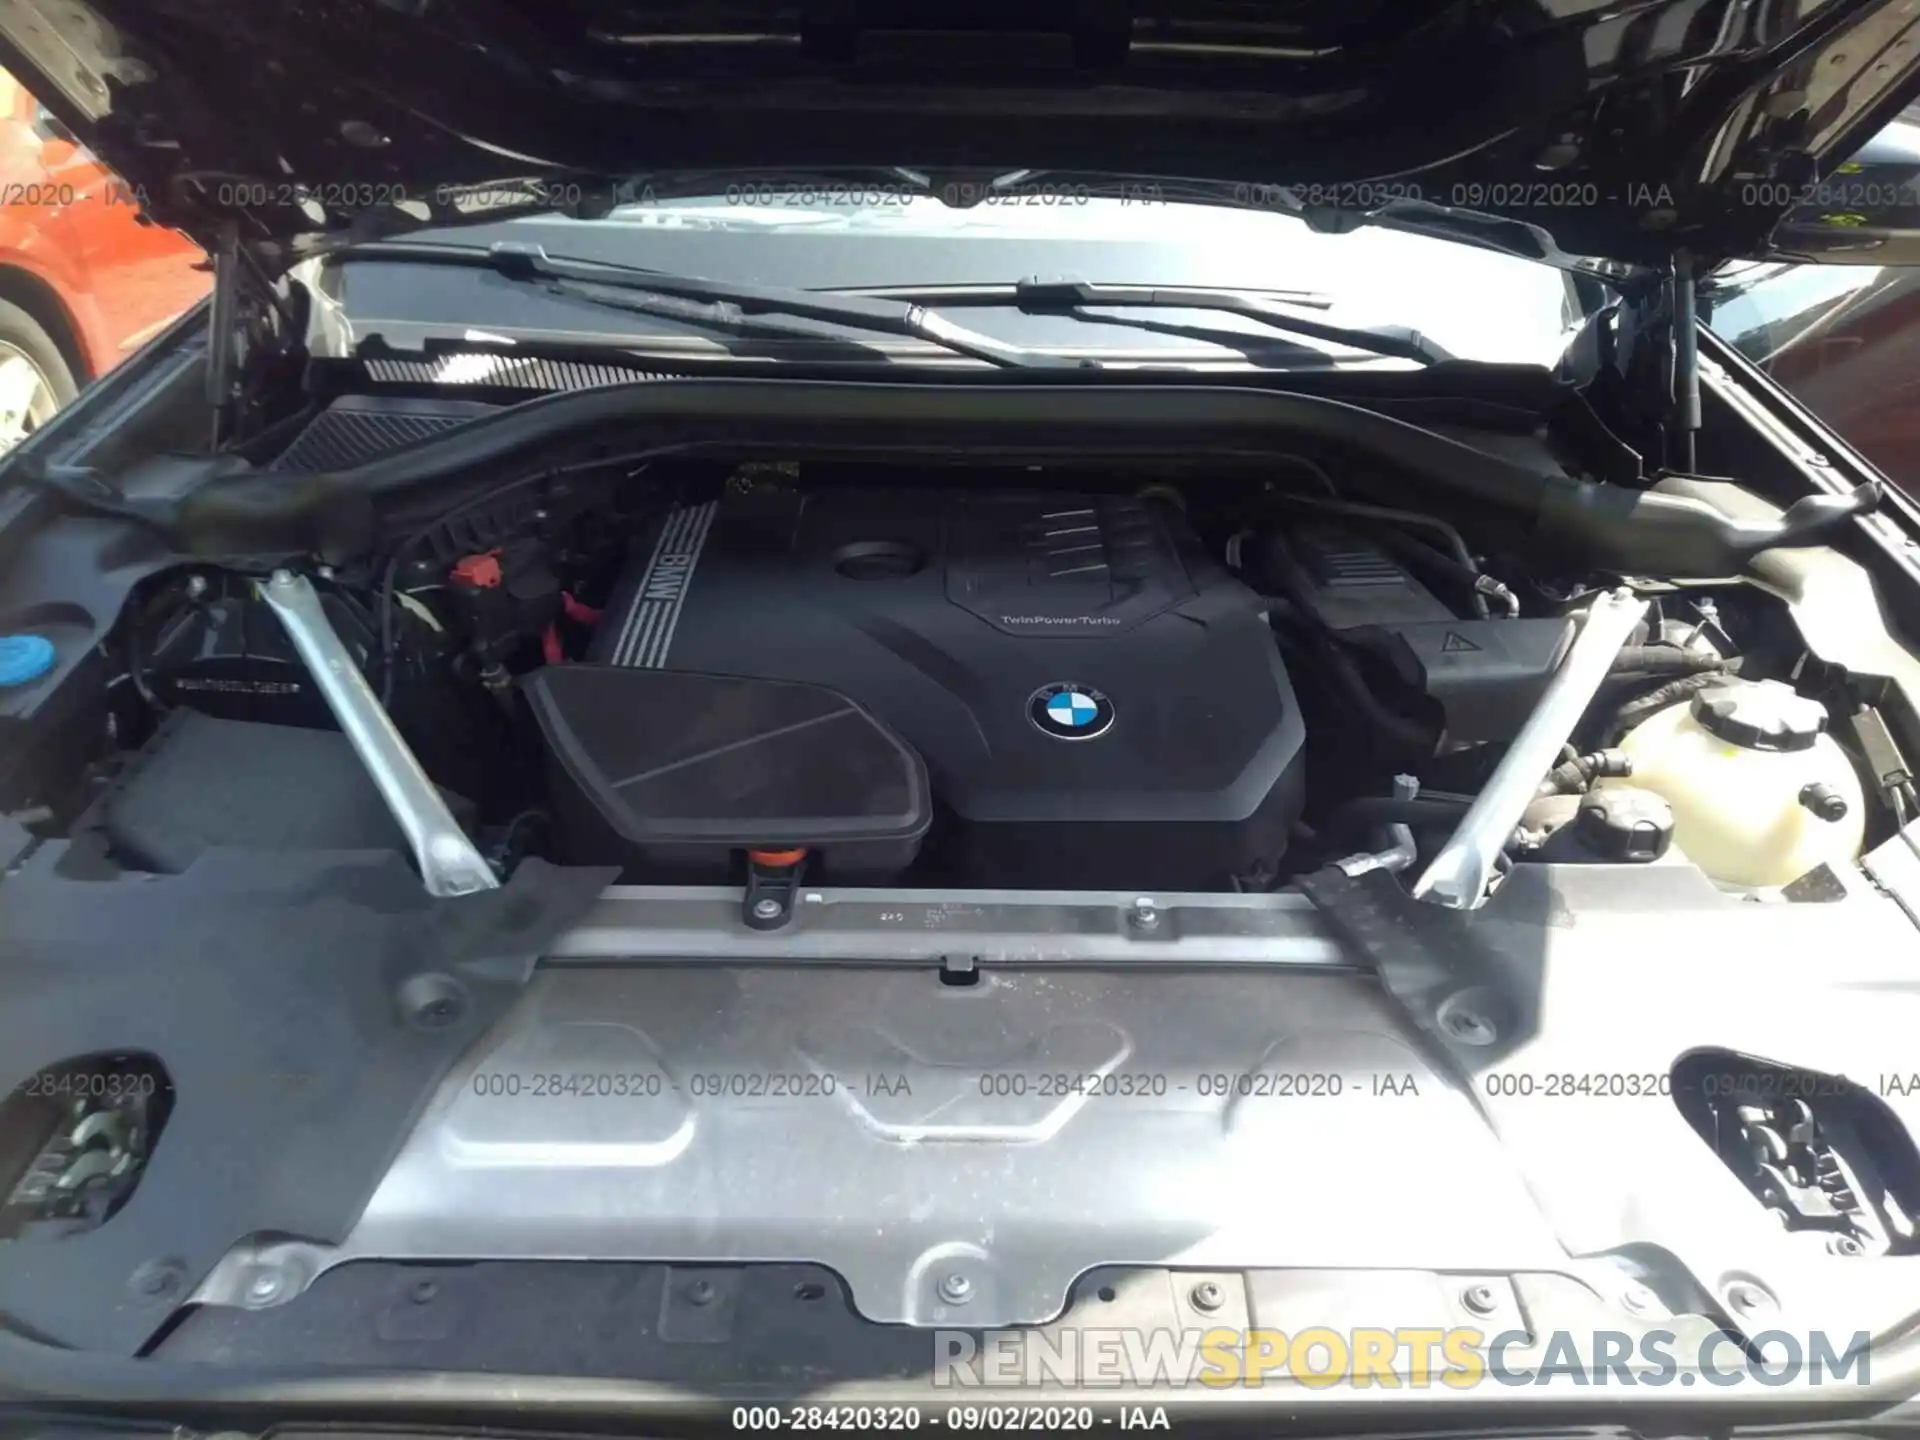 10 Photograph of a damaged car 5UXTY5C01LLT36918 BMW X3 2020